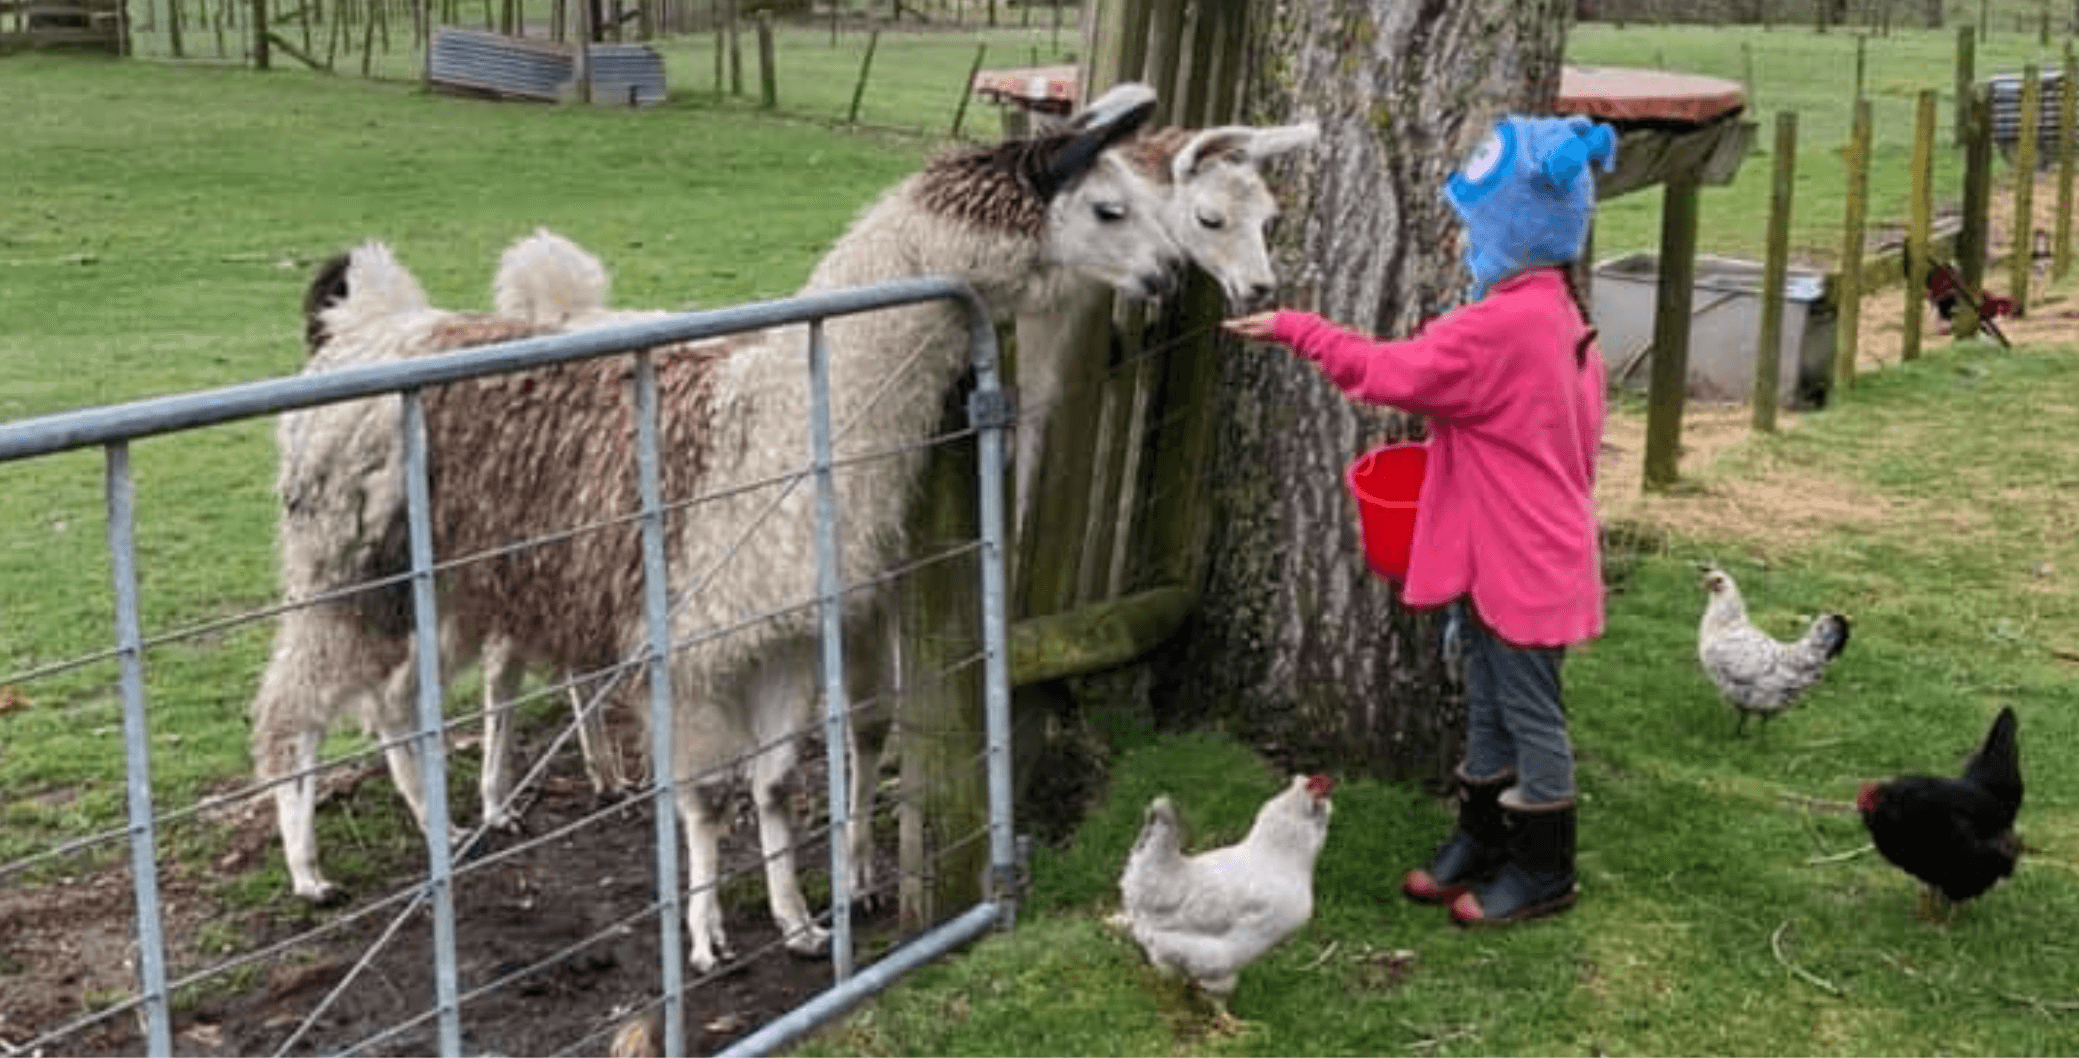 Lilliput Farm - Kid feeding llamas